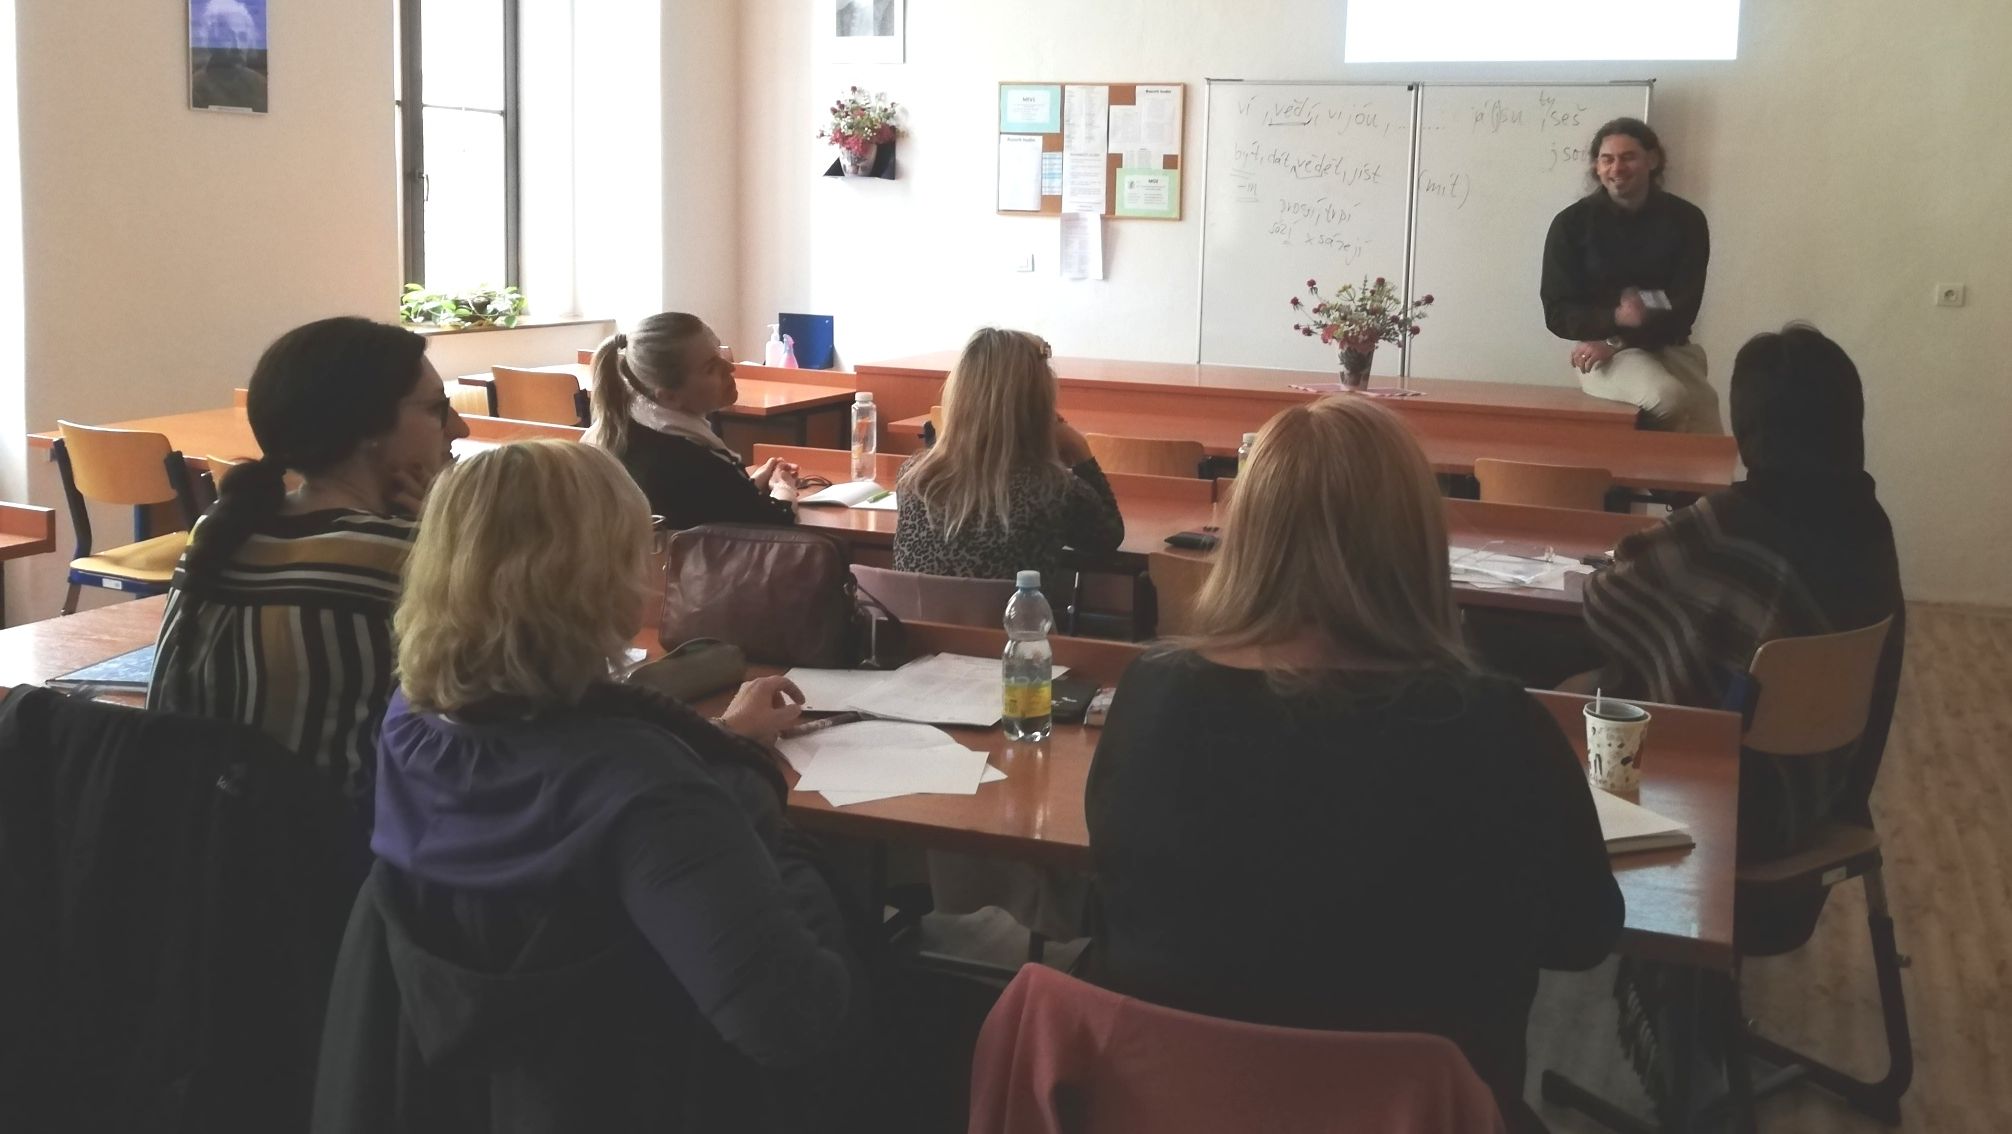 Kabinet čtenářské gramotnosti Olomouckého kraje navázal spolupráci s Katedrou bohemistiky Filozofické fakulty UP v Olomouci